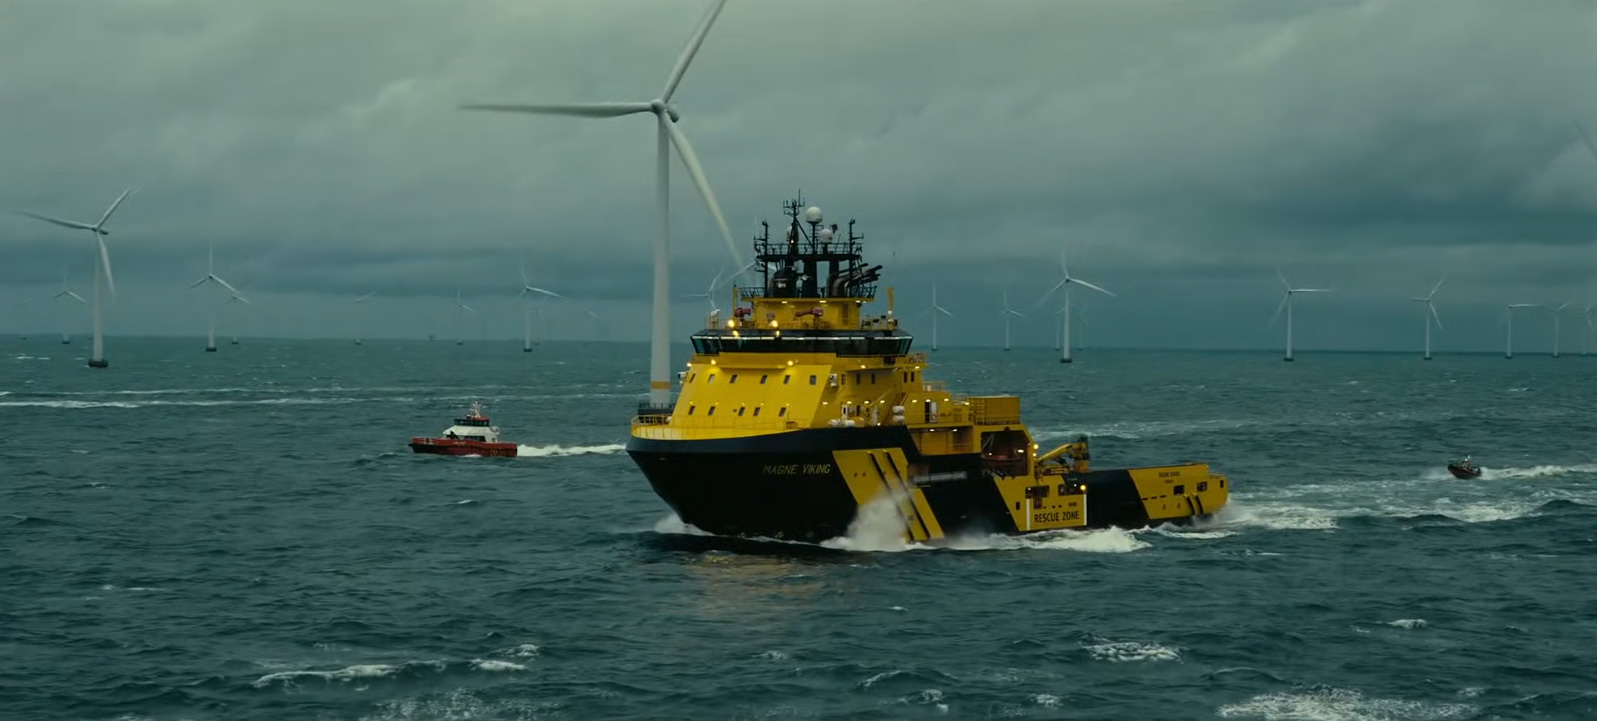 žlutý tanker plující mezi mořskými větrnými elektrárnami